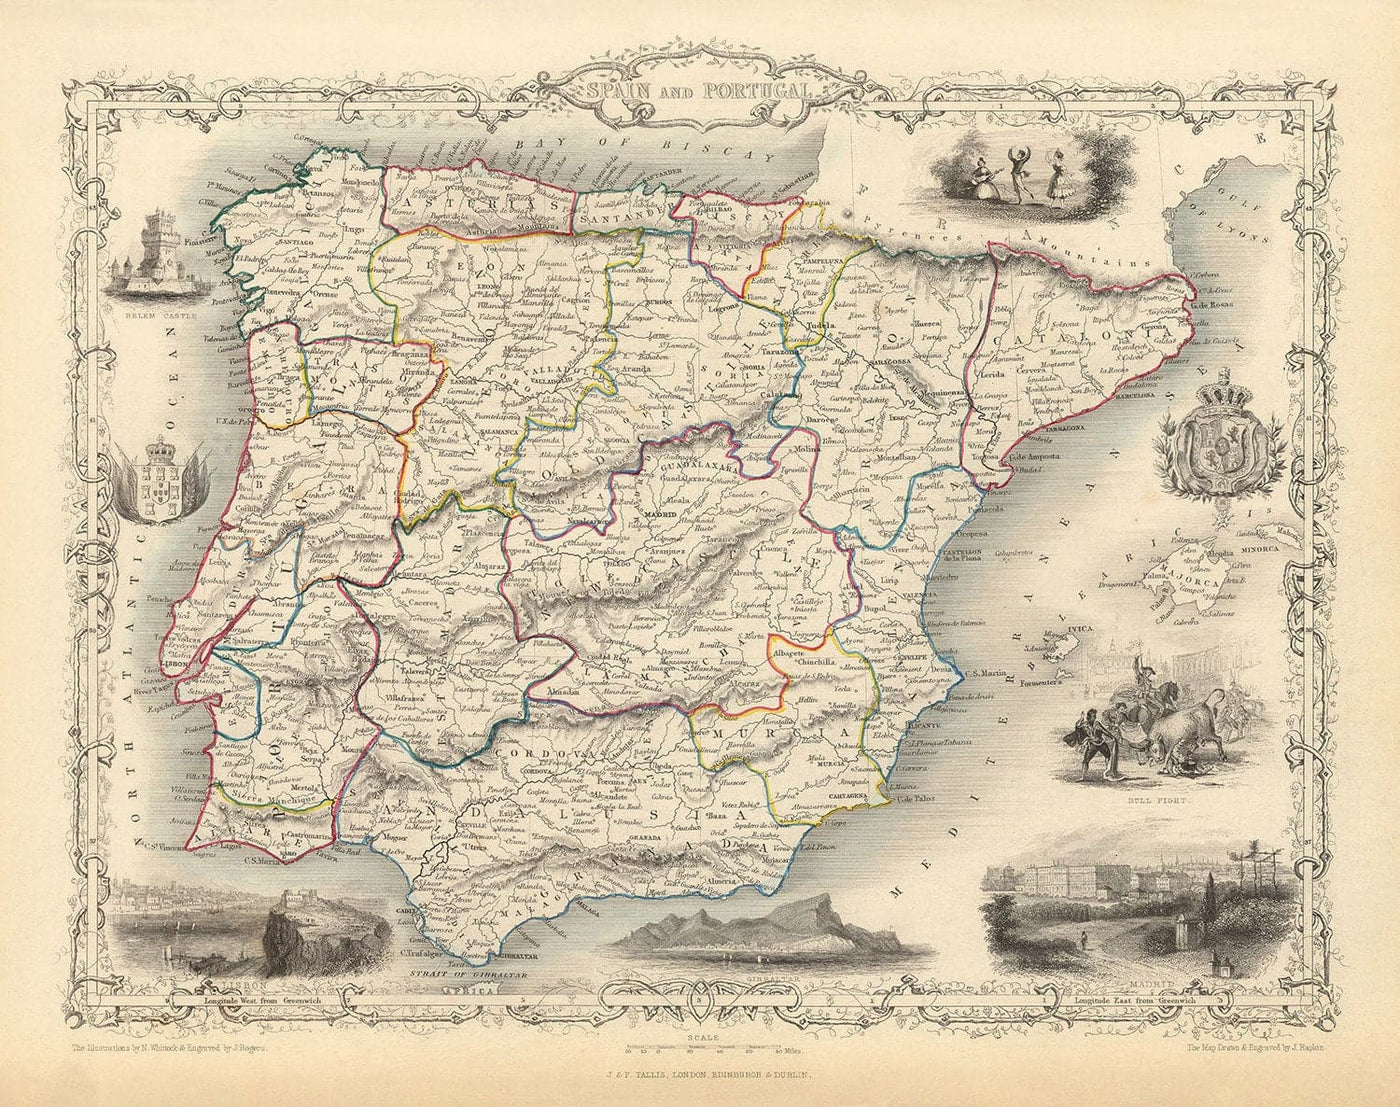 Alte Karte von Spanien & Portugal, 1851 - viktorianische Illustrationen - Katalonien, Madrid, Lissabon, Gibraltar, Andalusien